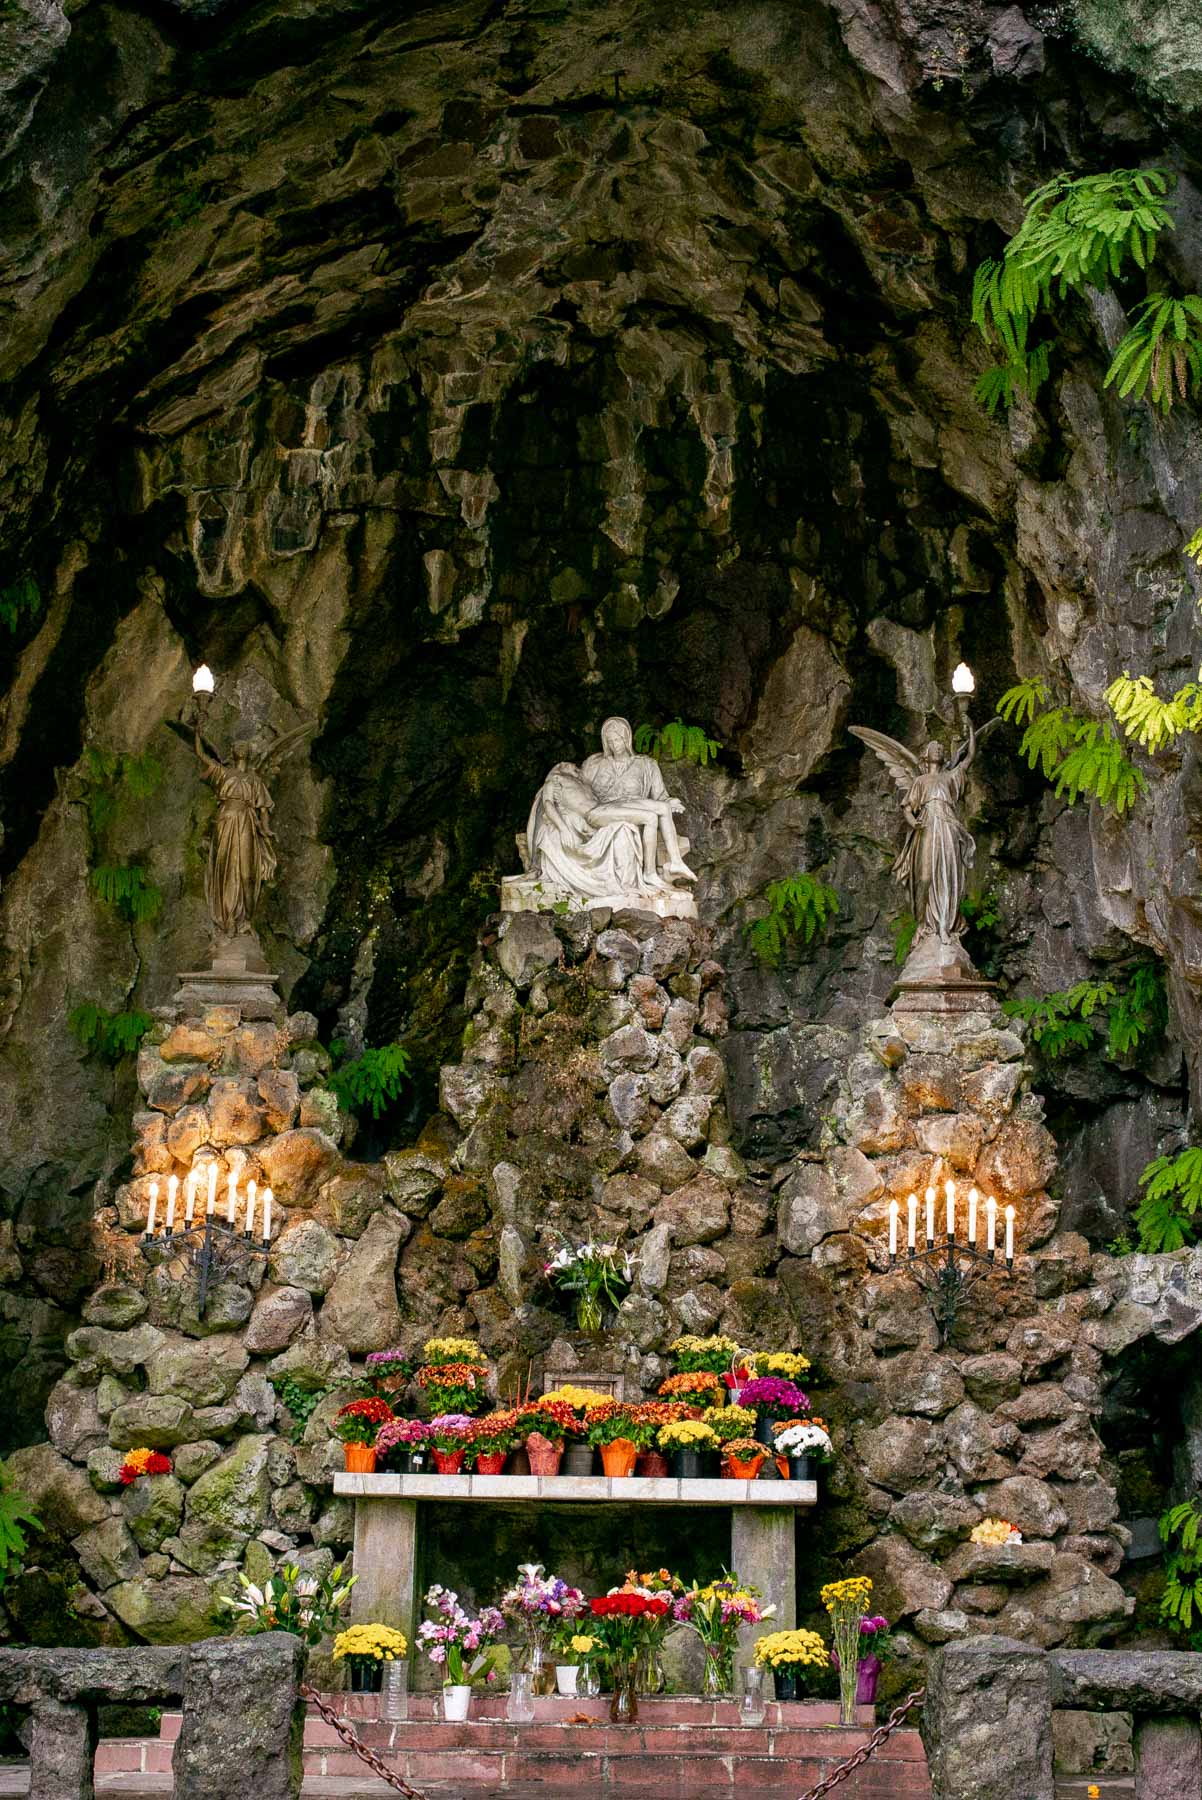 The Grotto statue